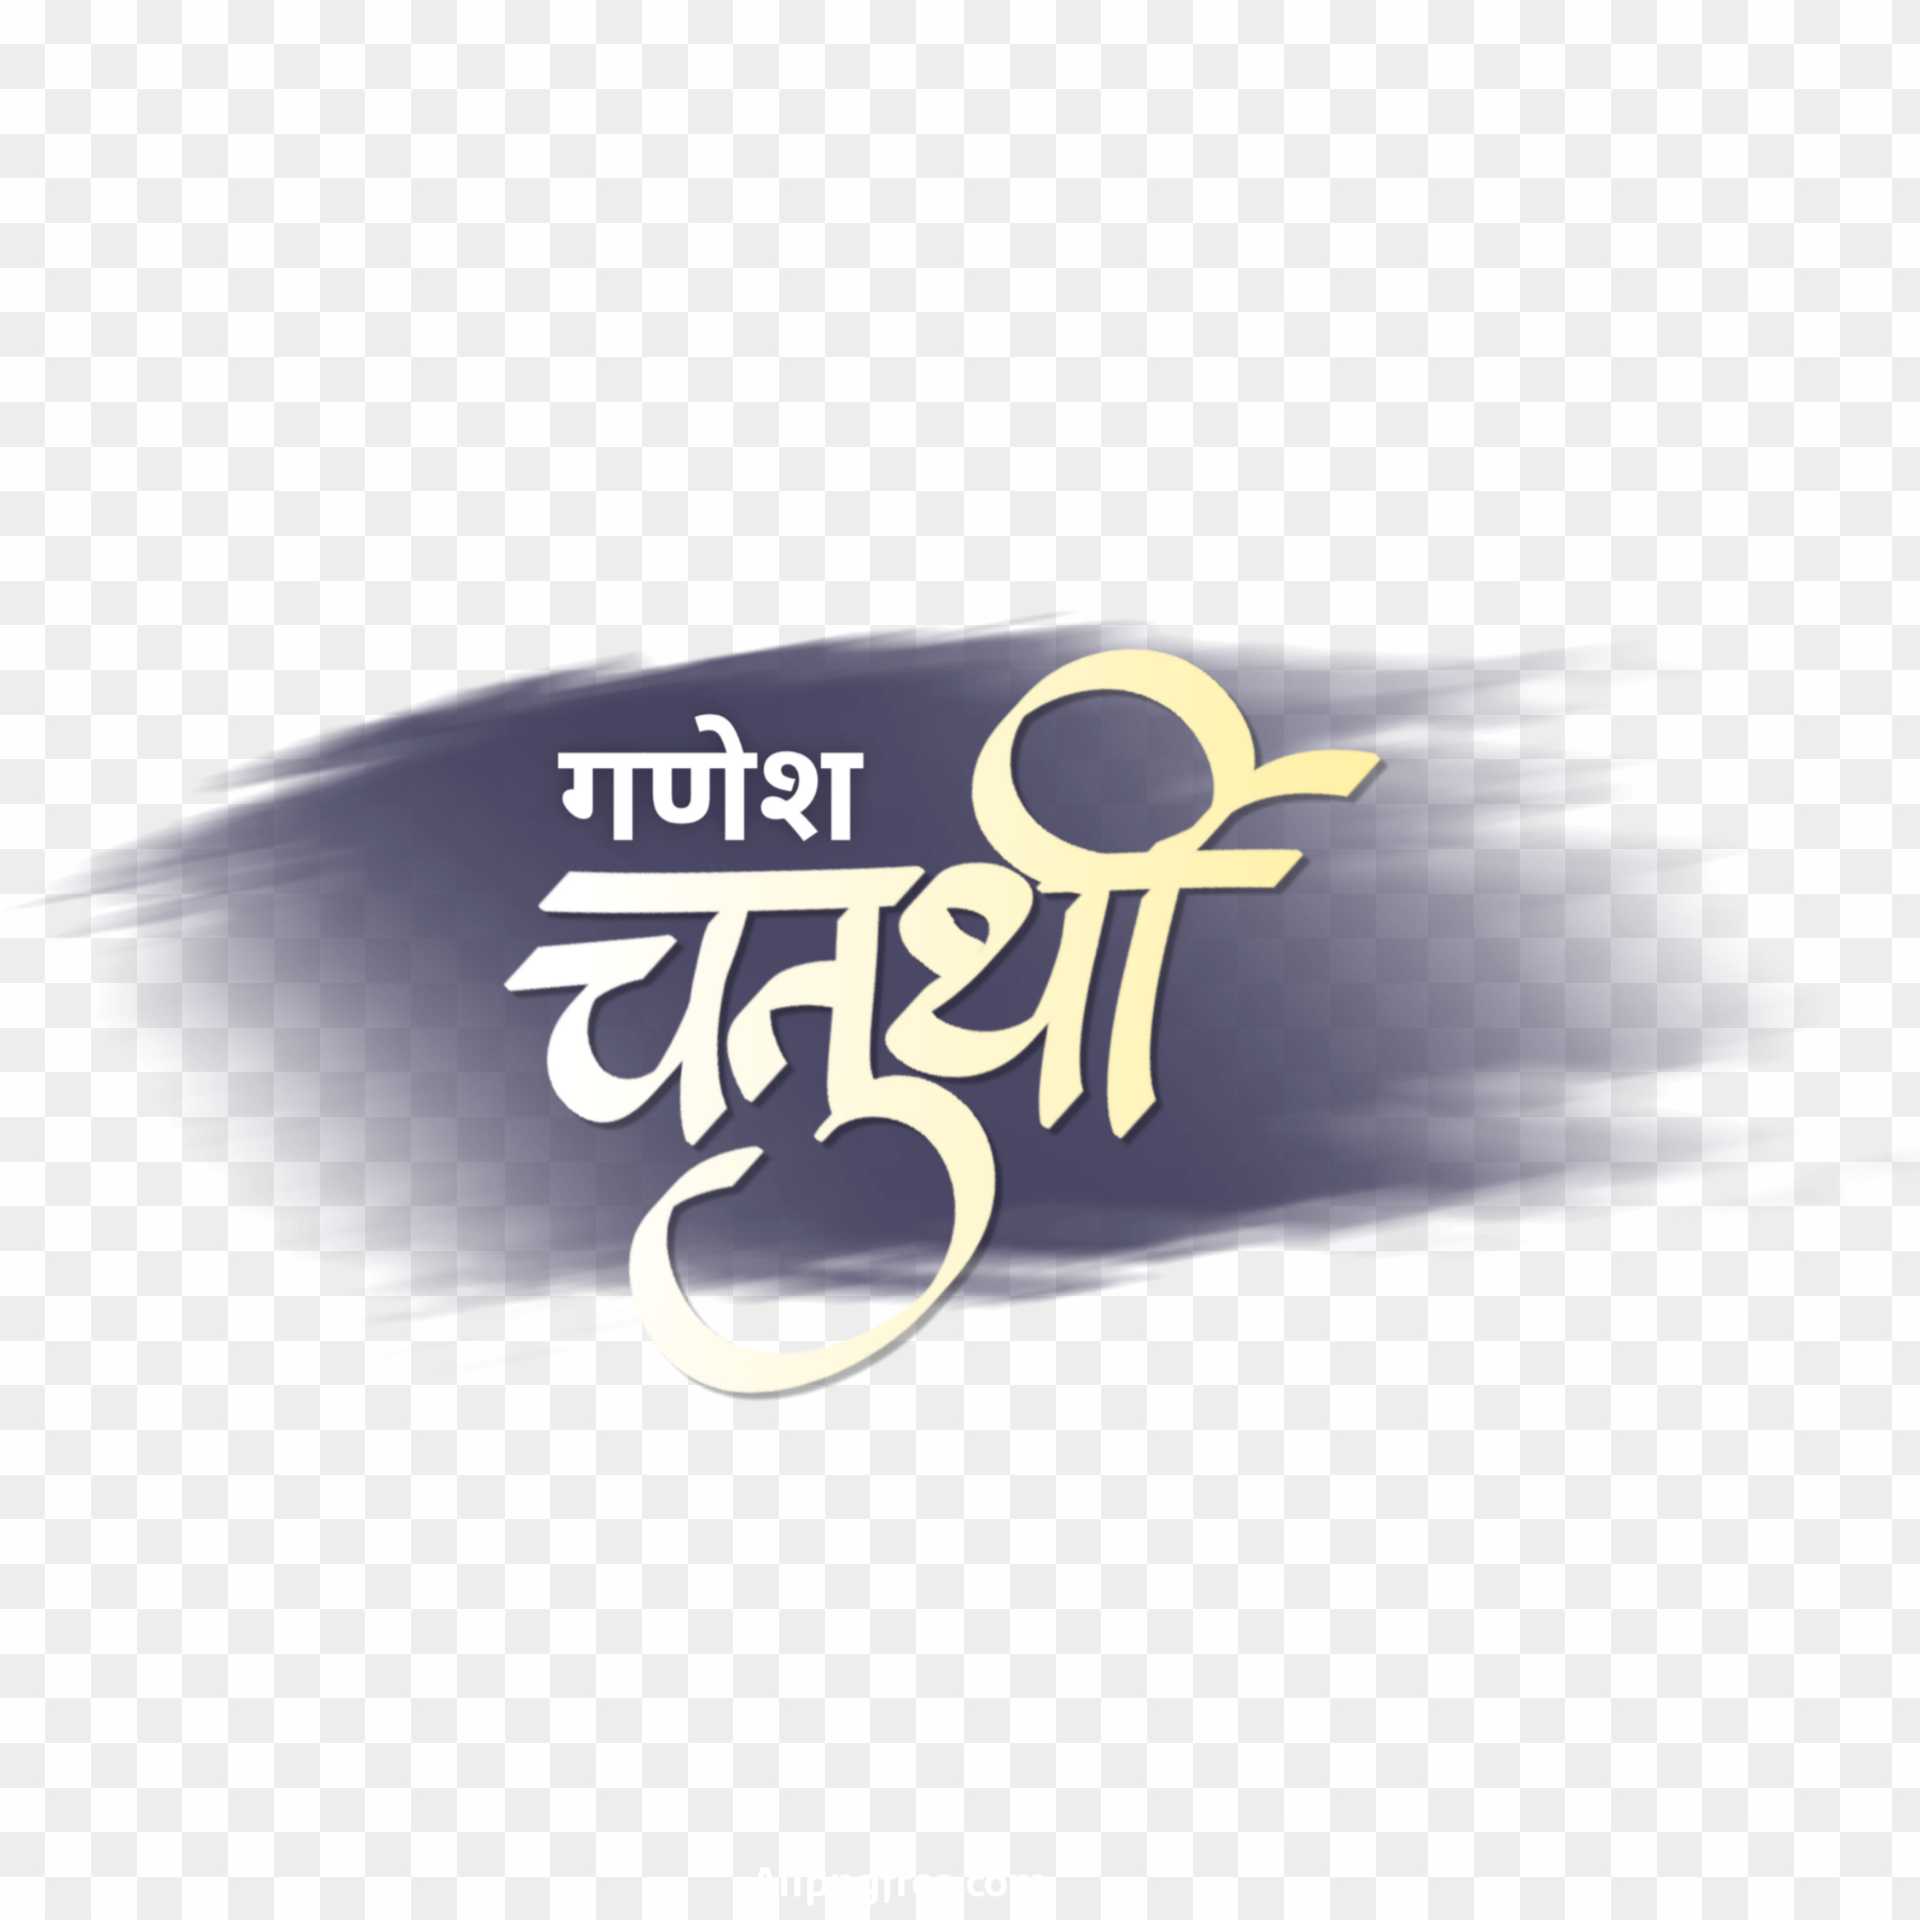 Ganesh chaturthi PNG transparent image 